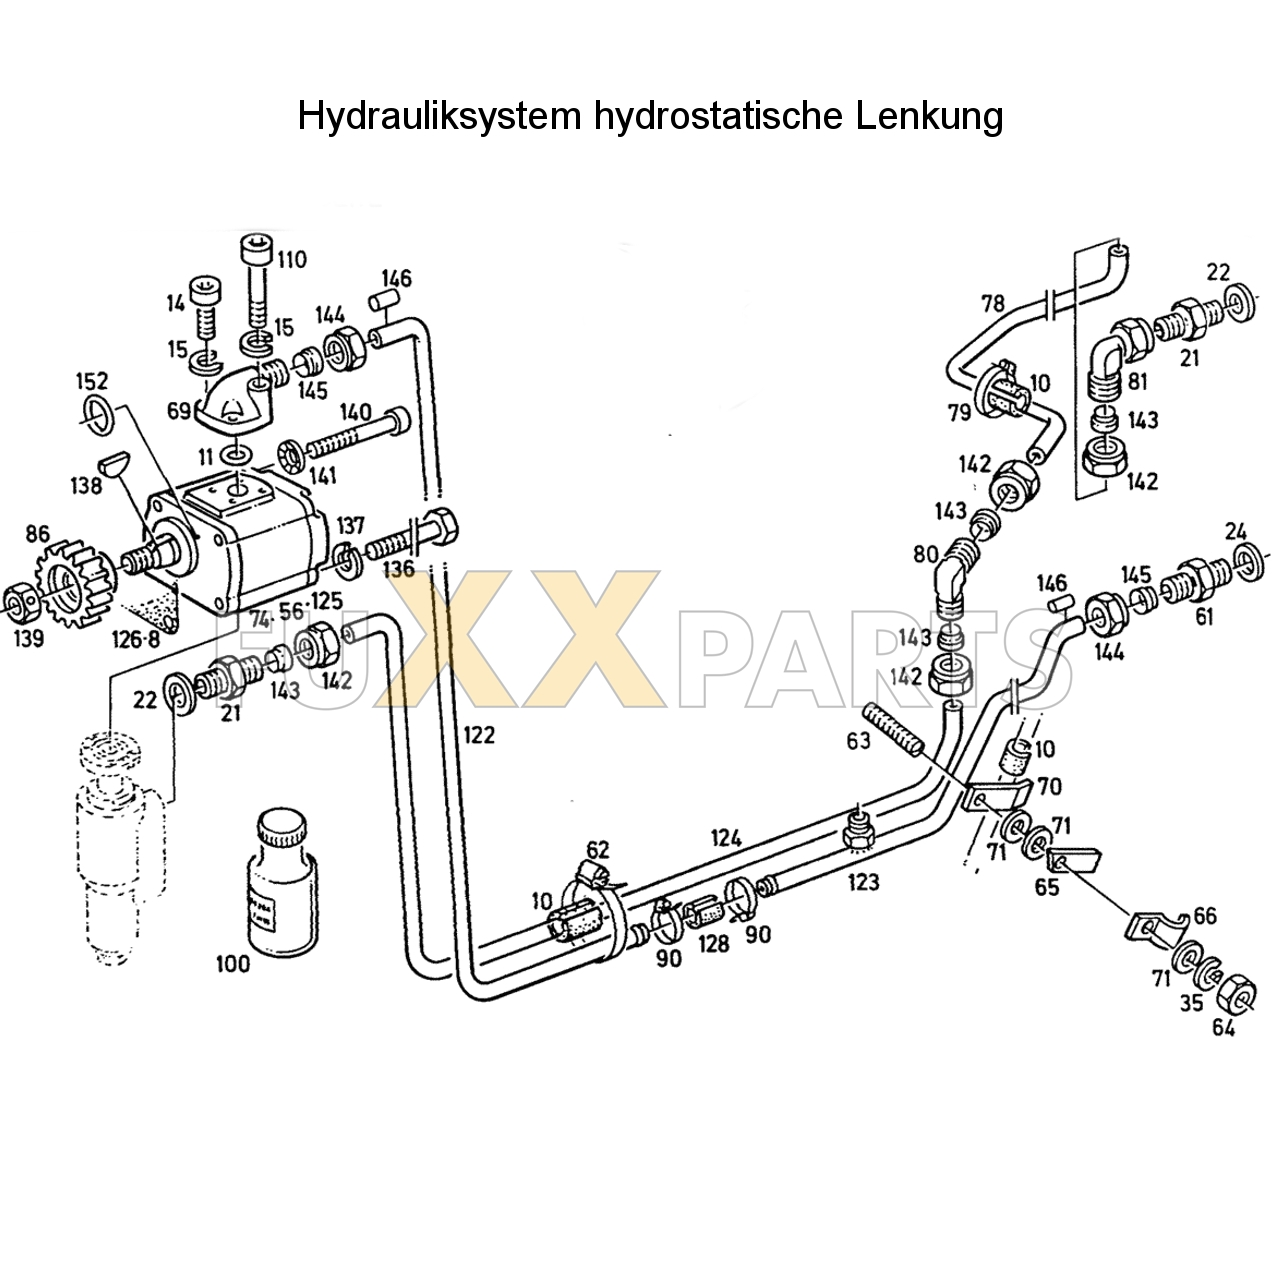 D 6807 Hydrauliksystem hyd. Lenkung